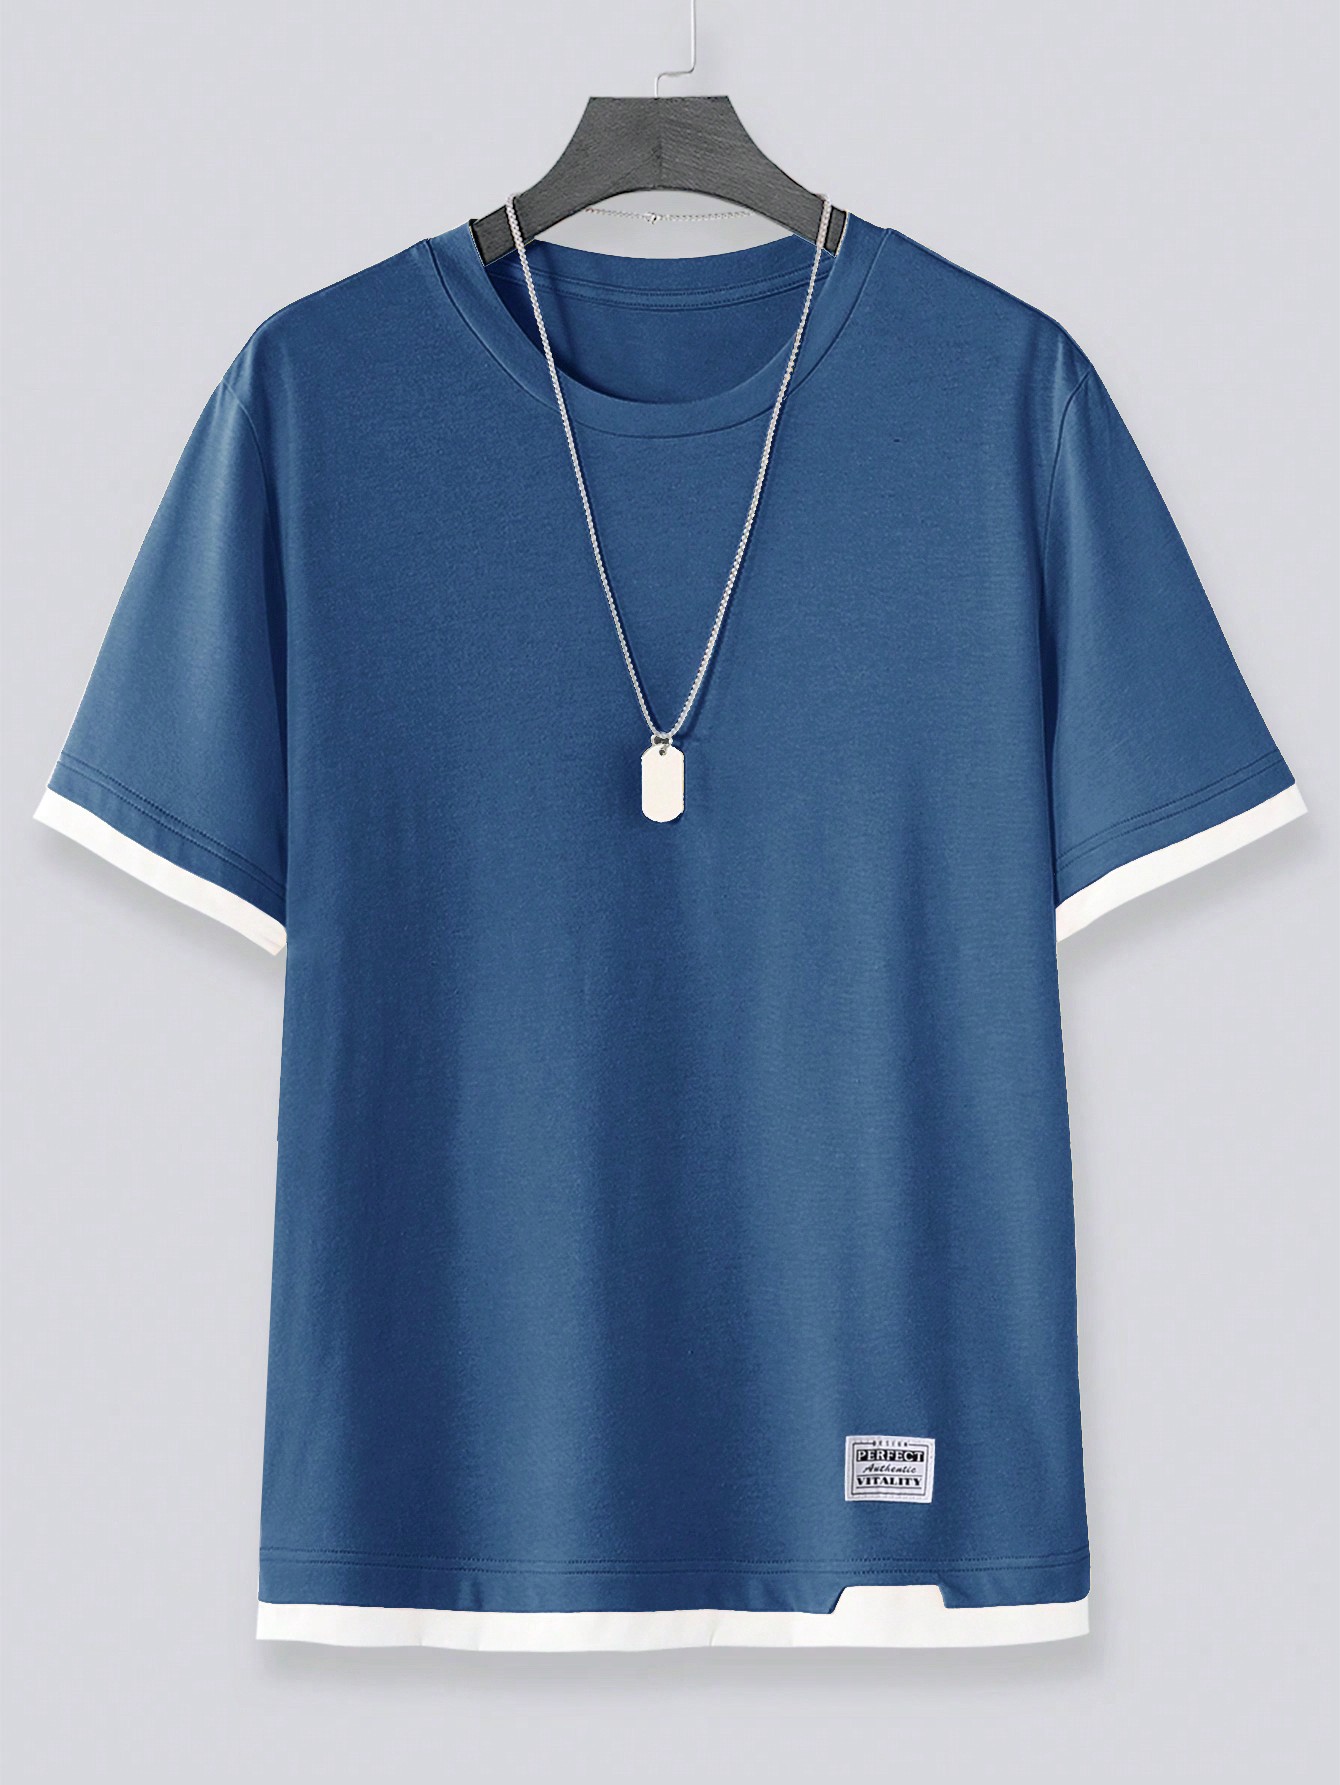 Мужская футболка Manfinity Hypemode с цветными блоками и контрастной строчкой, пыльный синий футболка мужская с контрастной отделкой madison 170 голубой белый размер xl